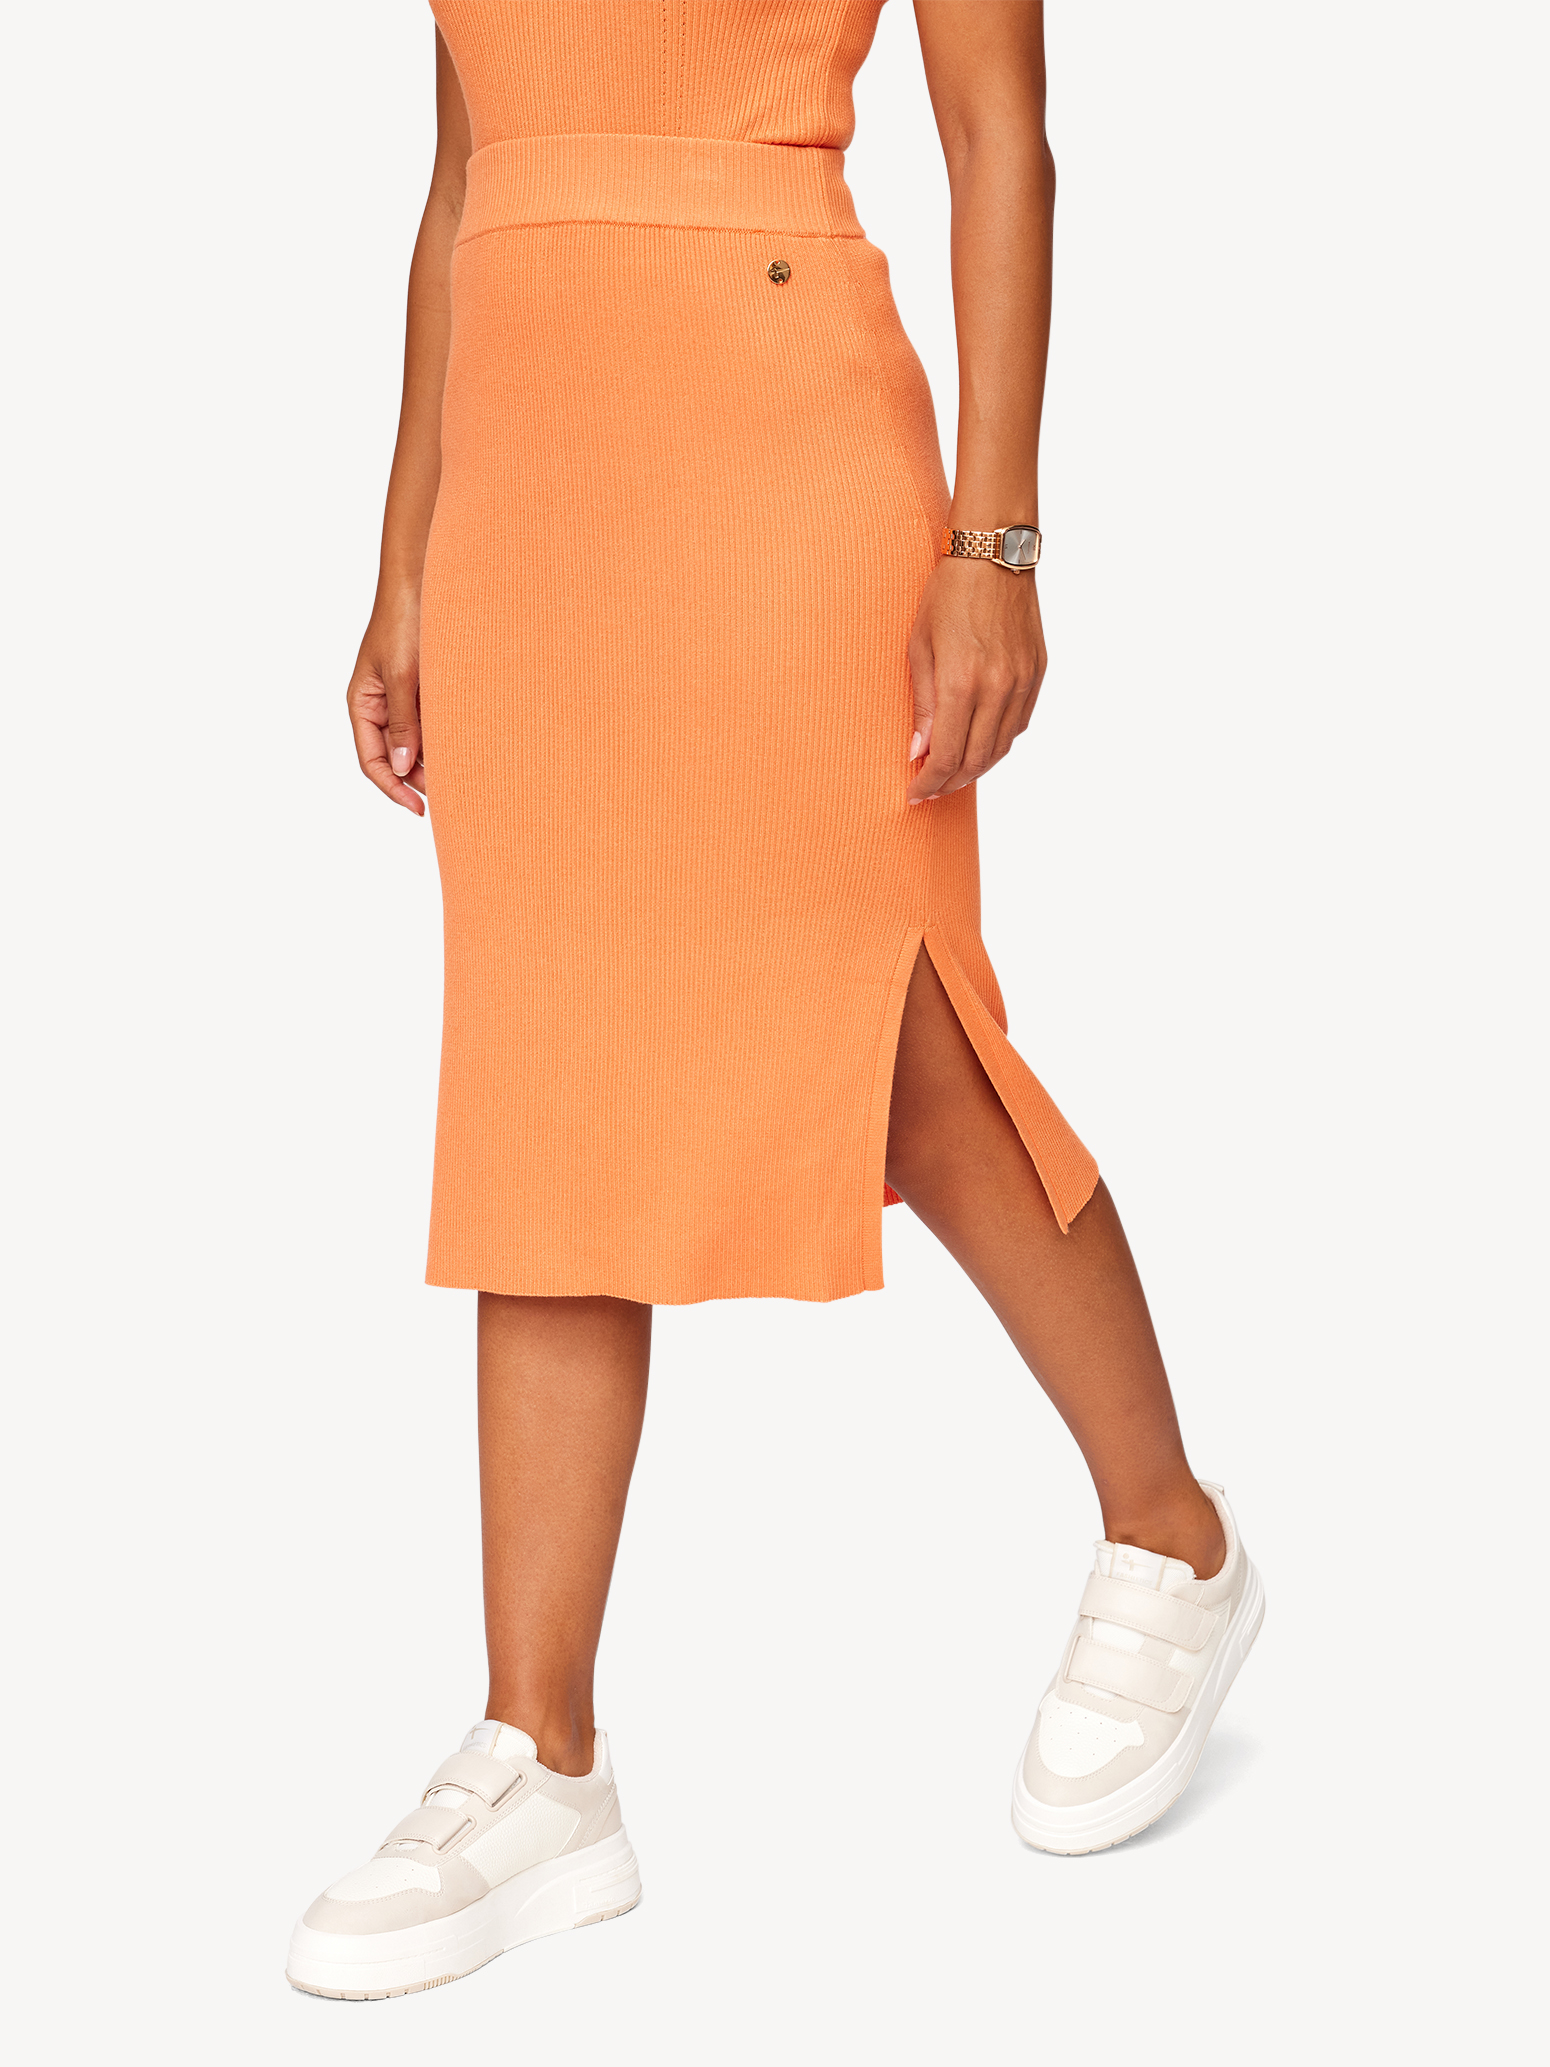 Röcke orange kaufen! TAW0036-30035: - Tamaris Rock online